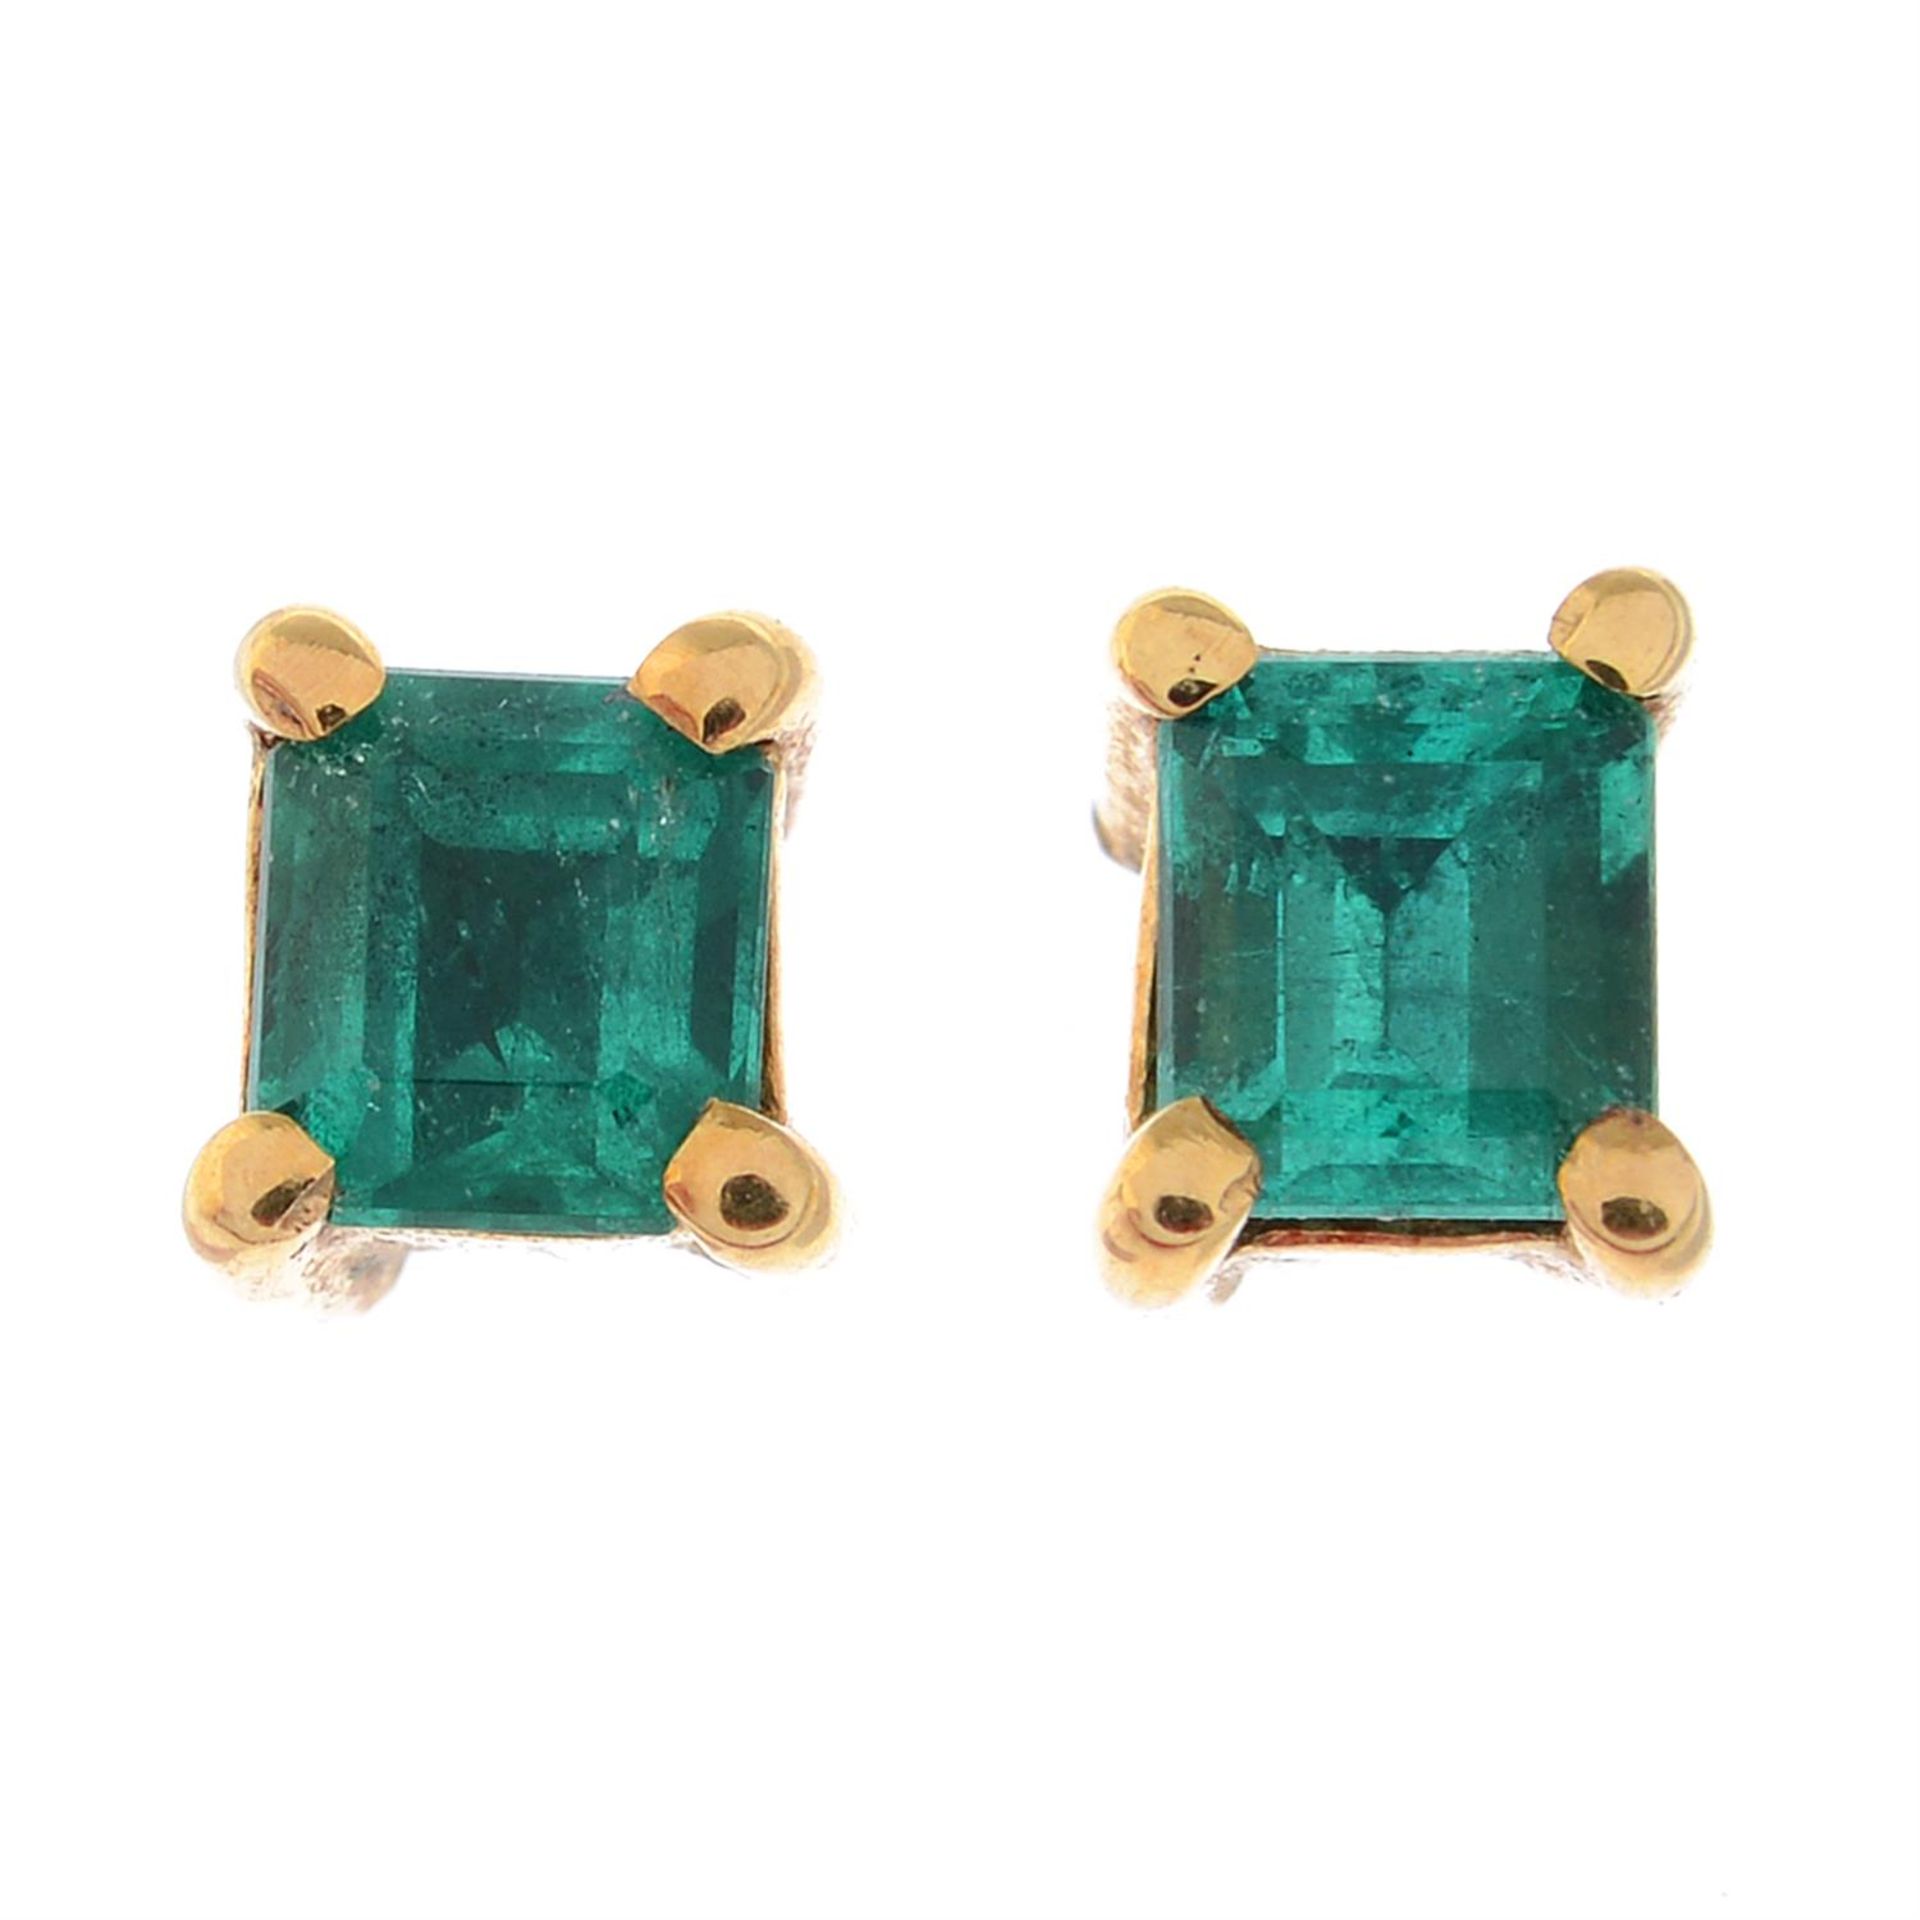 A pair of emerald stud earrings.